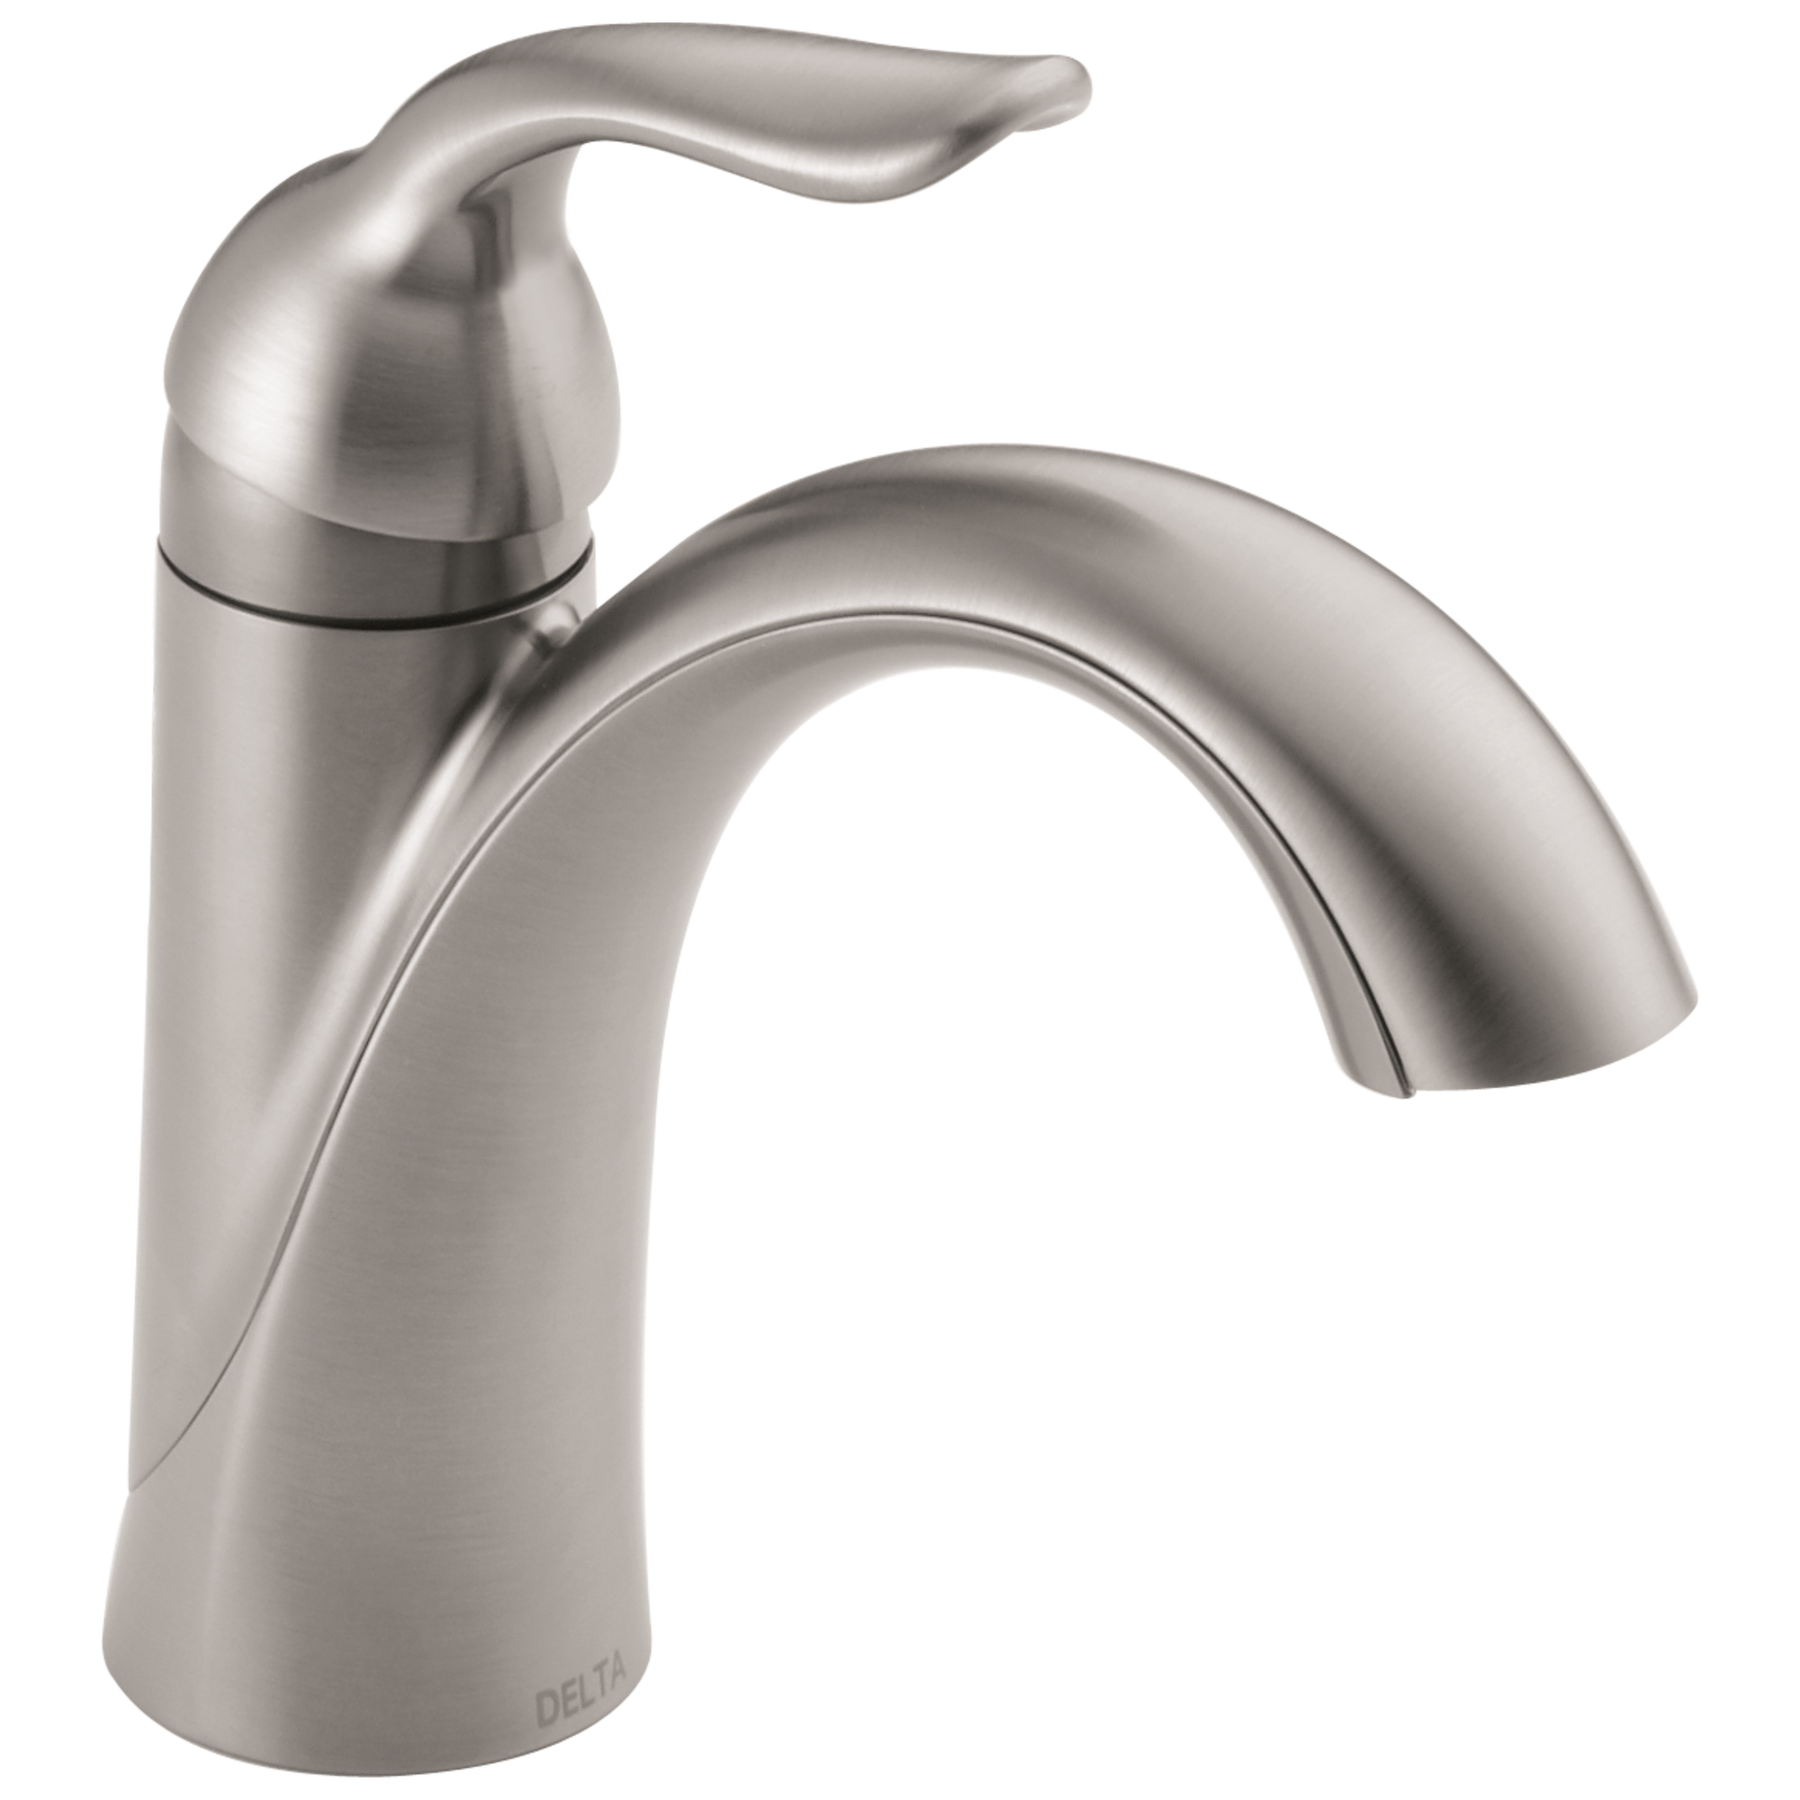 Home Basics Draining Faucet Sponge Holder, White/Grey